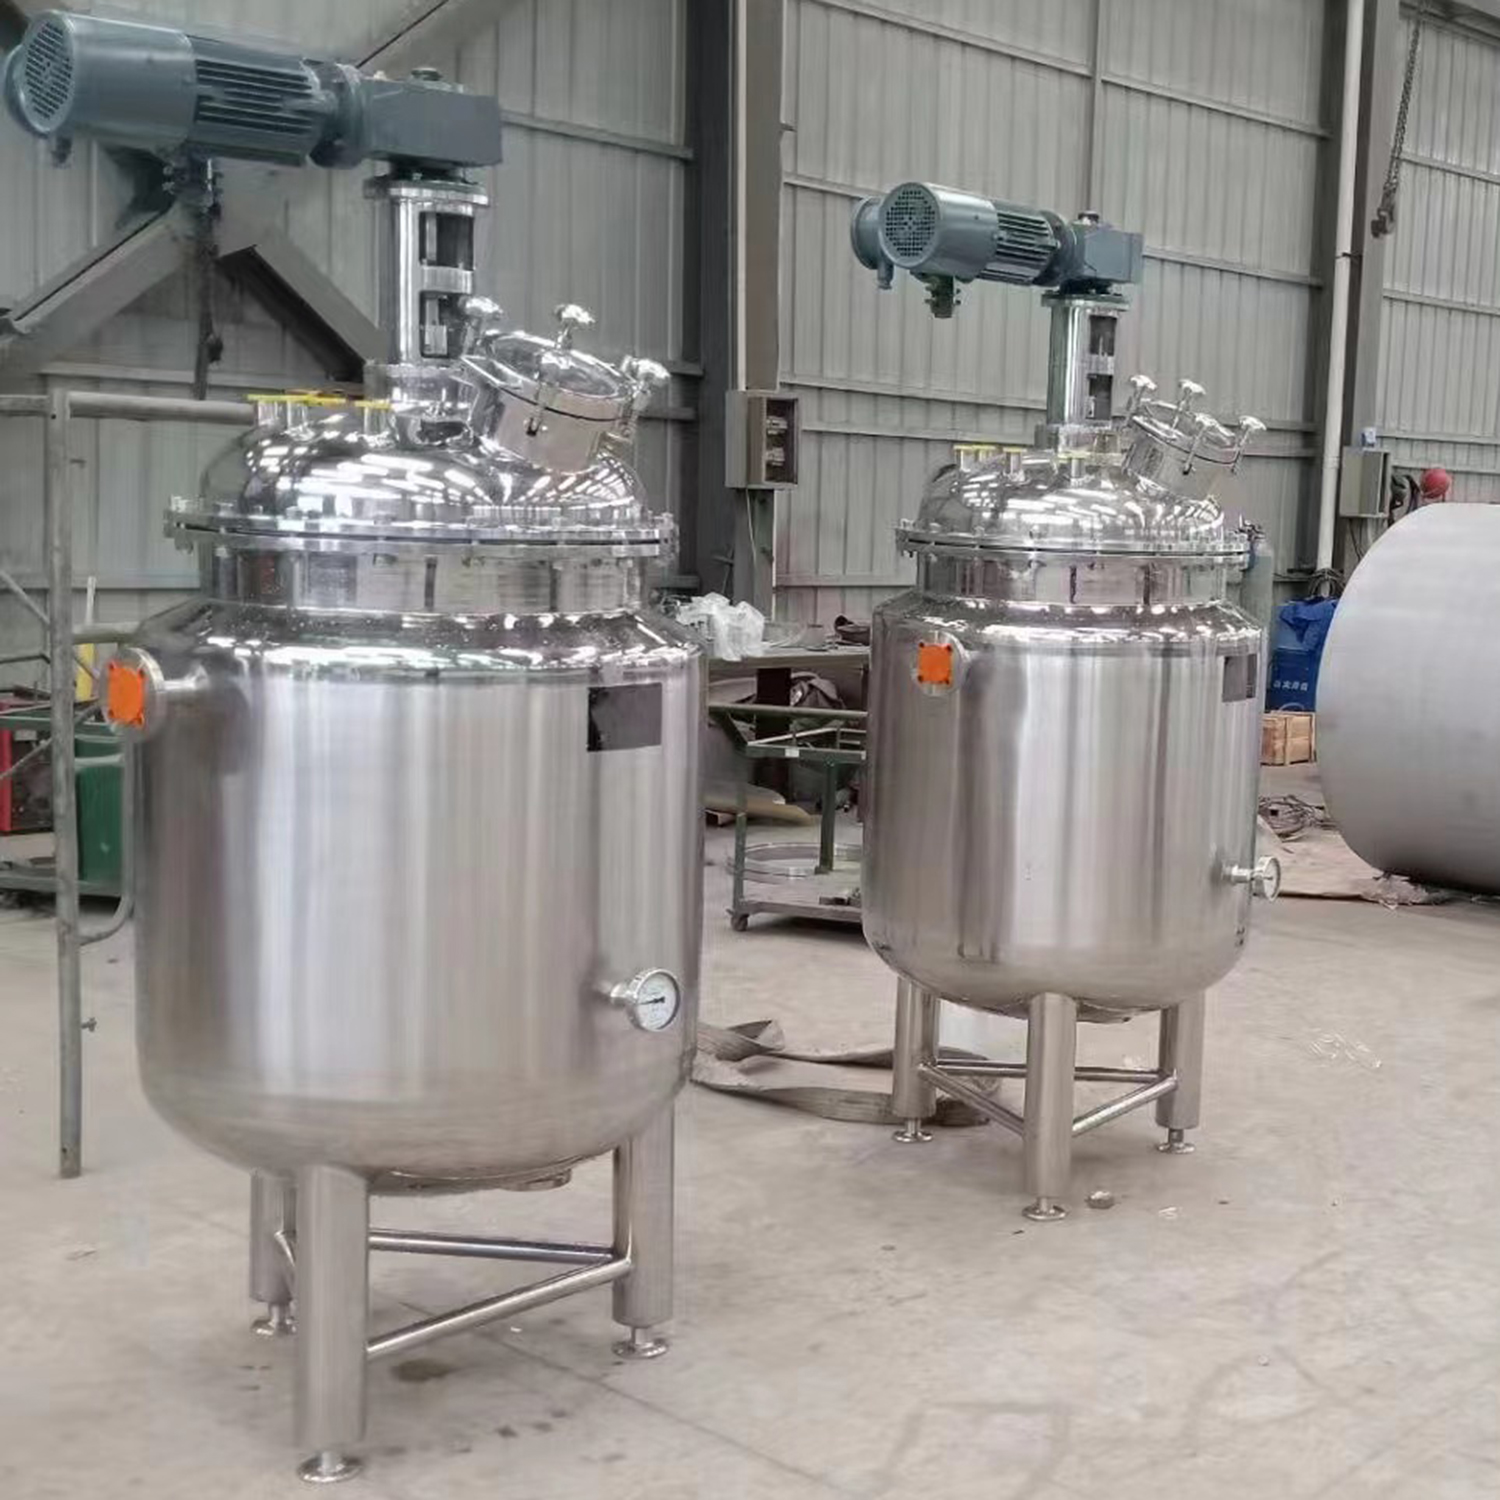 2000L санитарно-гигиенический ферментационный резервуар из нержавеющей стали SS304 с резервуарами с кожухом для охлаждения ямочек для винодельни